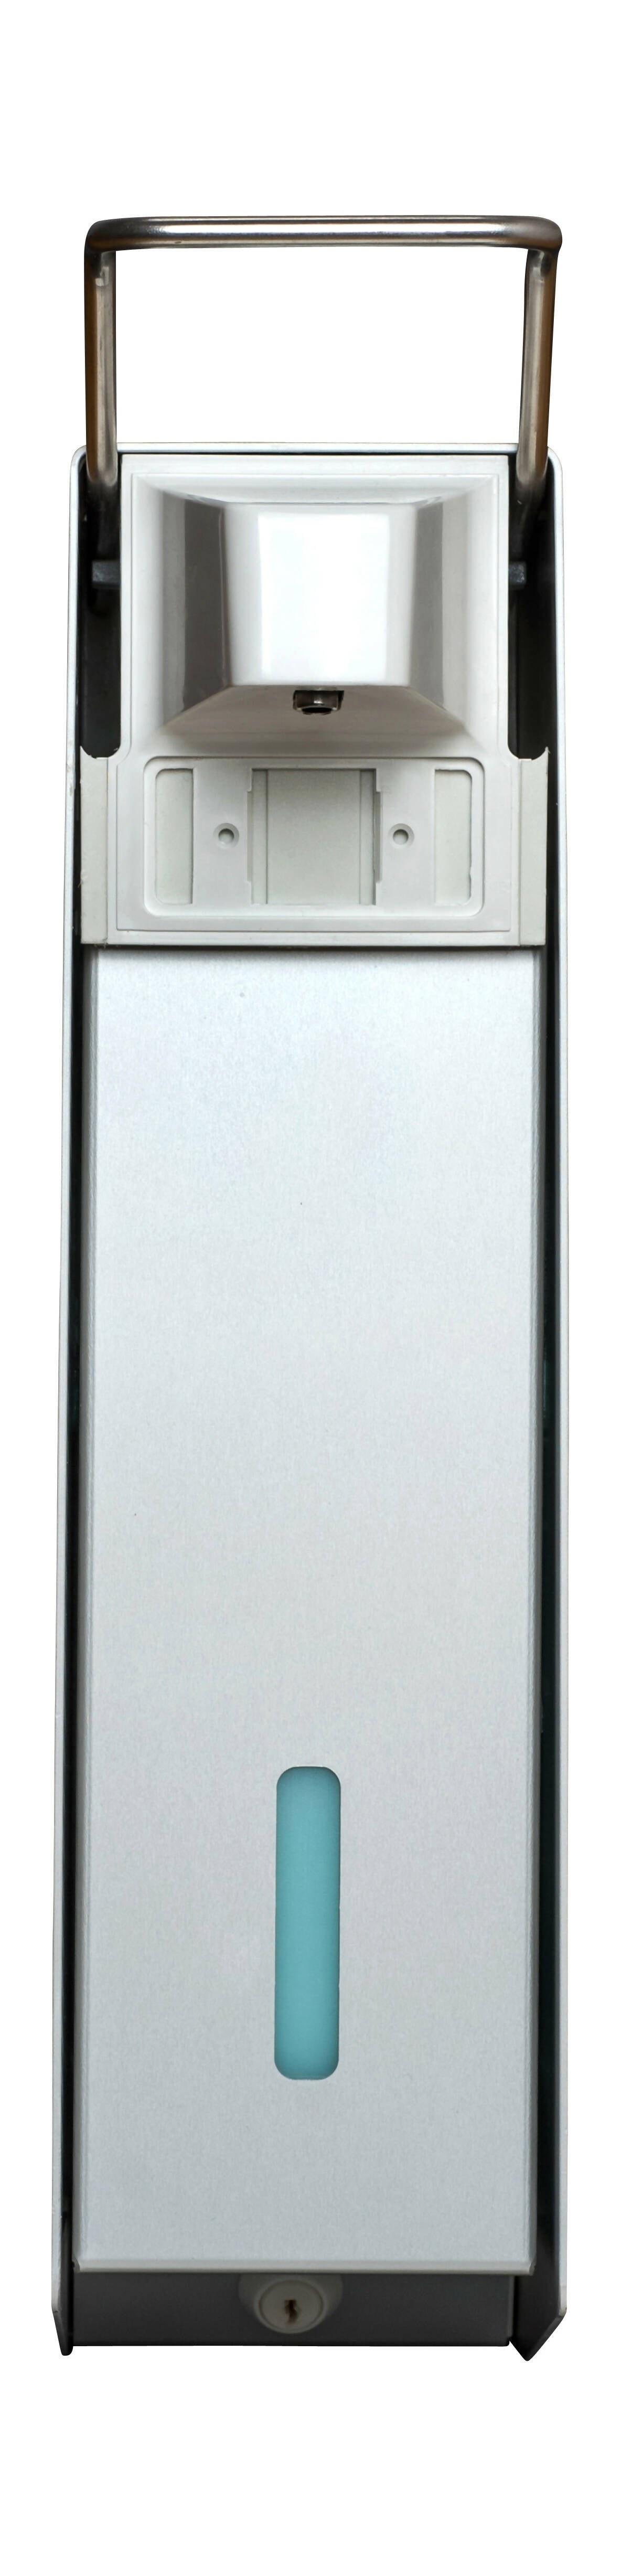 SORIFA - Lot de 5 - Distributeur mural métallique robuste, ergonomique, verrouillable pour flacon 2.5L de marque SORIFA - Pour gels et savons liquides. - 0